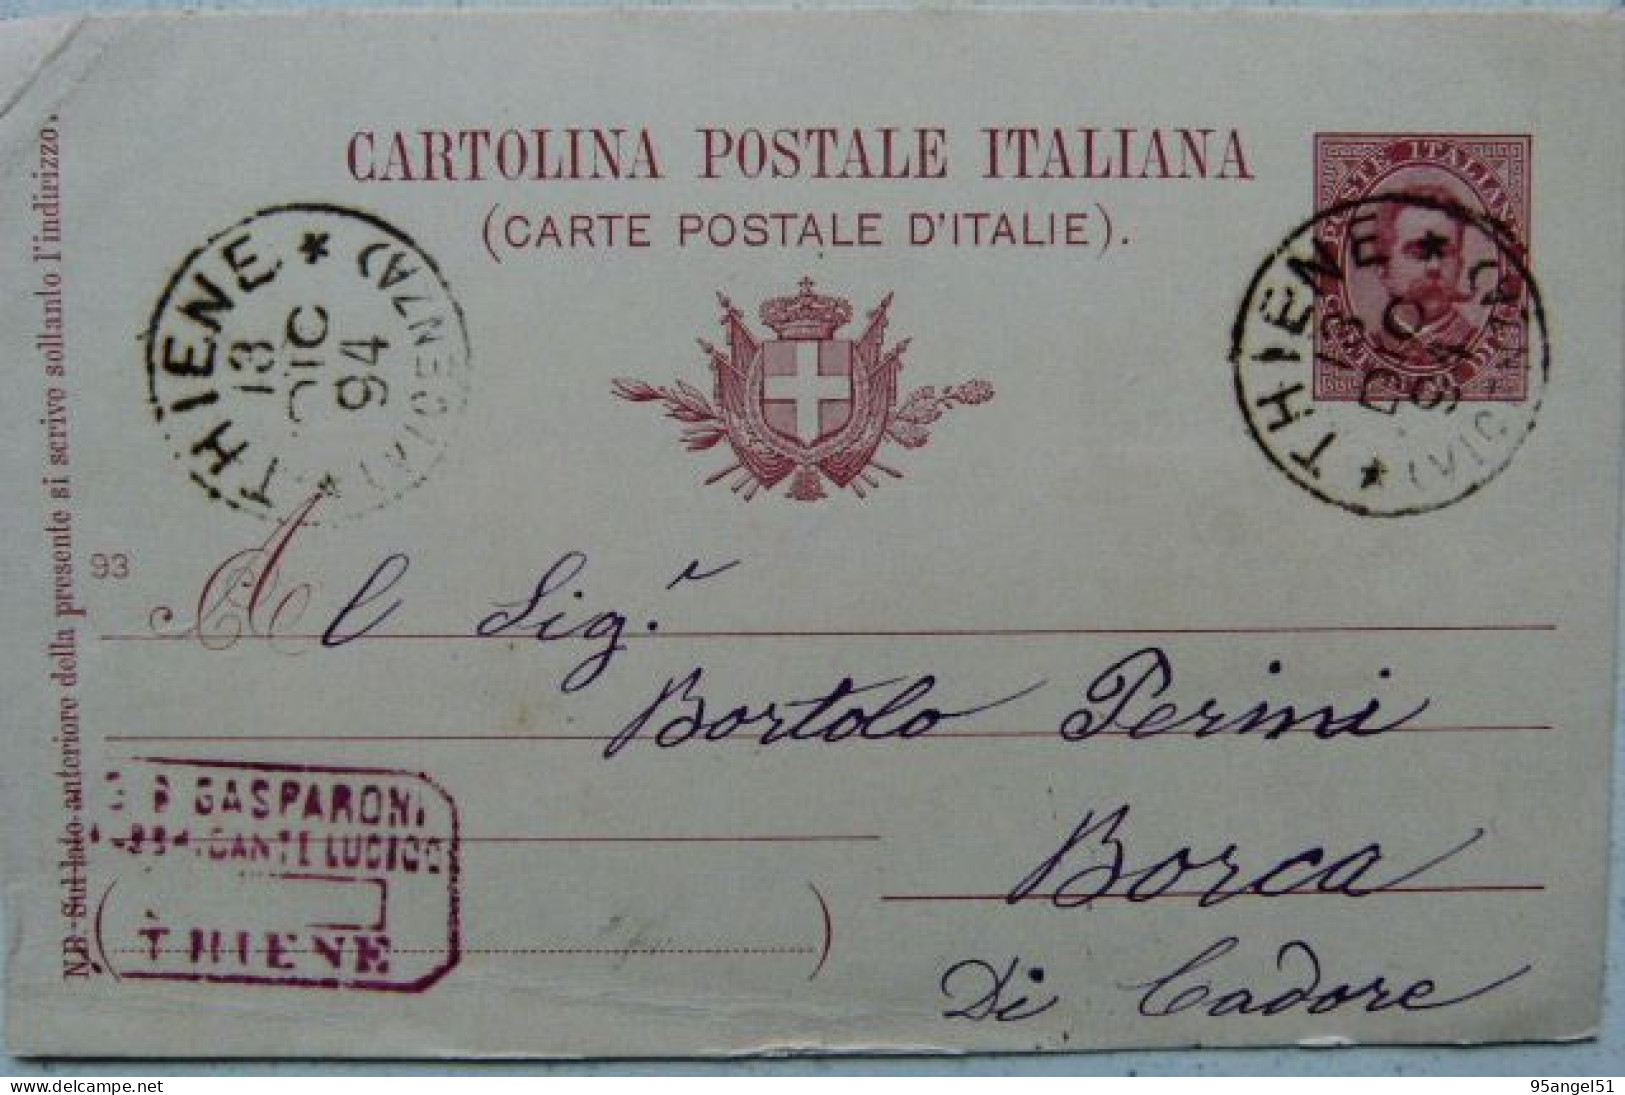 THIENE VICENZA - G.B.GASPARONI COMMERCIANTE - TIMBRO SU CARTOLINA POSTALE 1894 X BORCA DI CADORE - 130 ANNI! - Vicenza